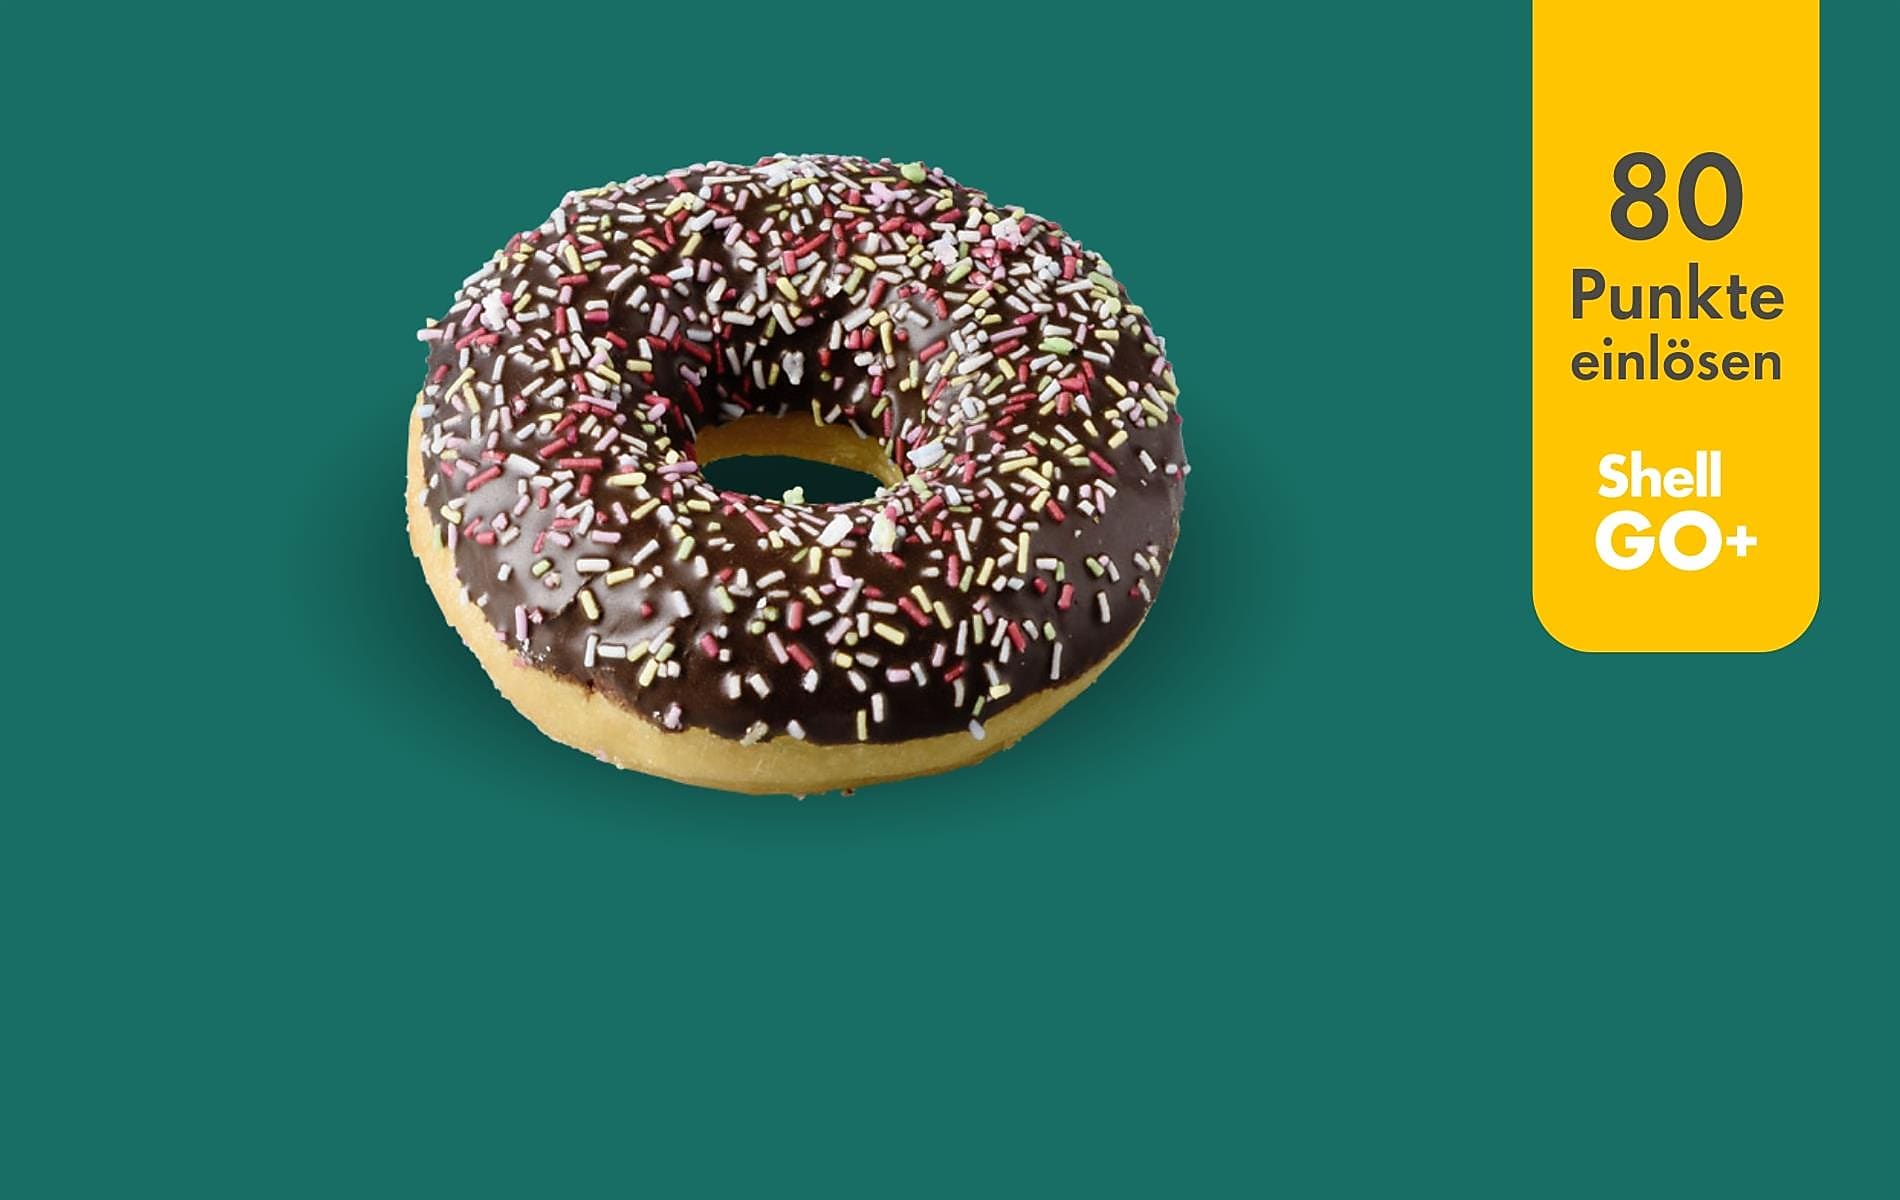 Shell Go+ Punktedeal: Donut um 80 Punkte